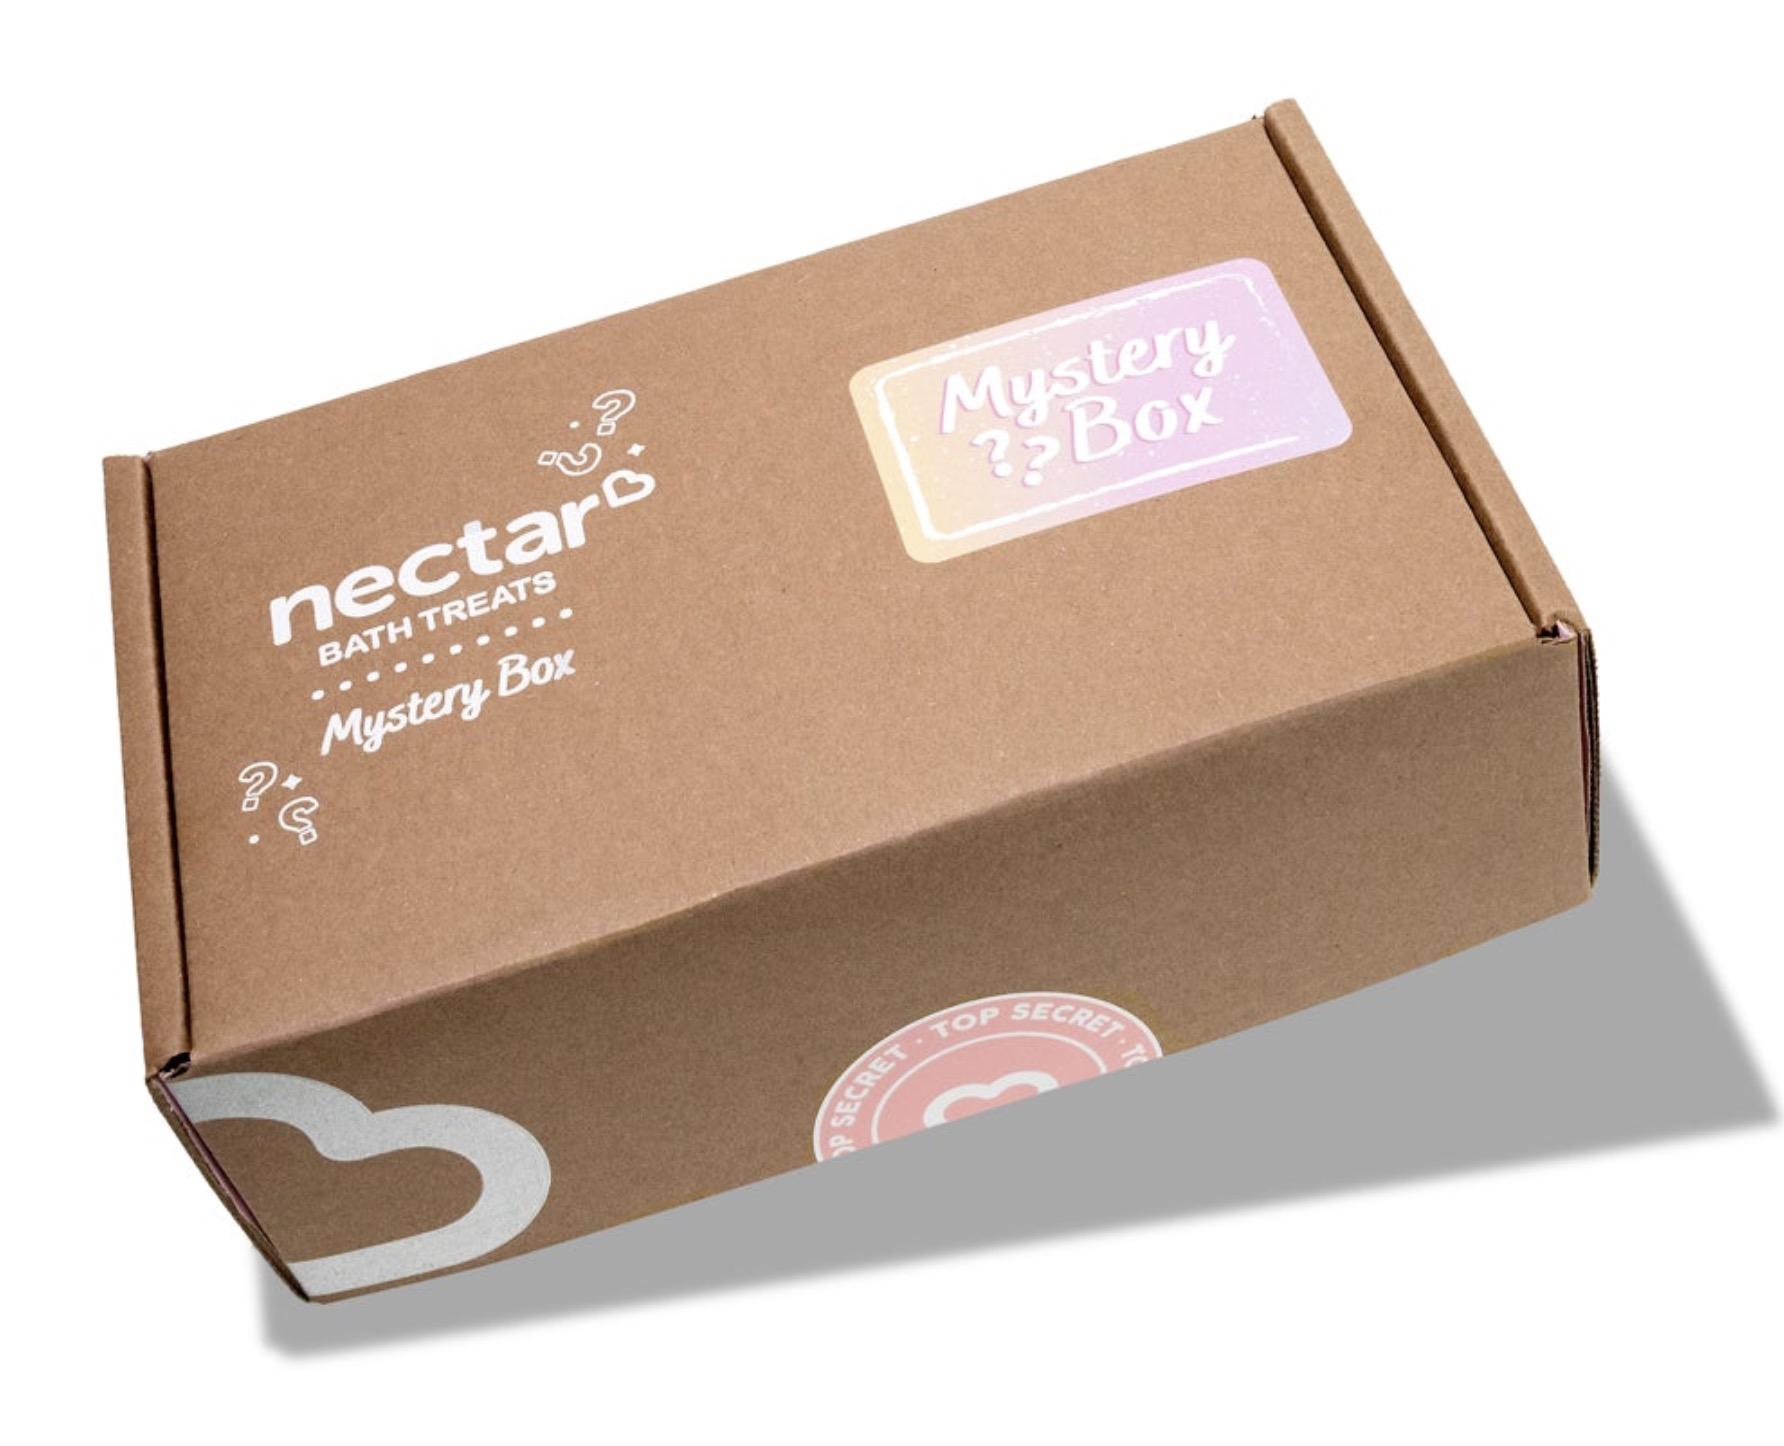 Nectar Mystery Box – On Sale Now!